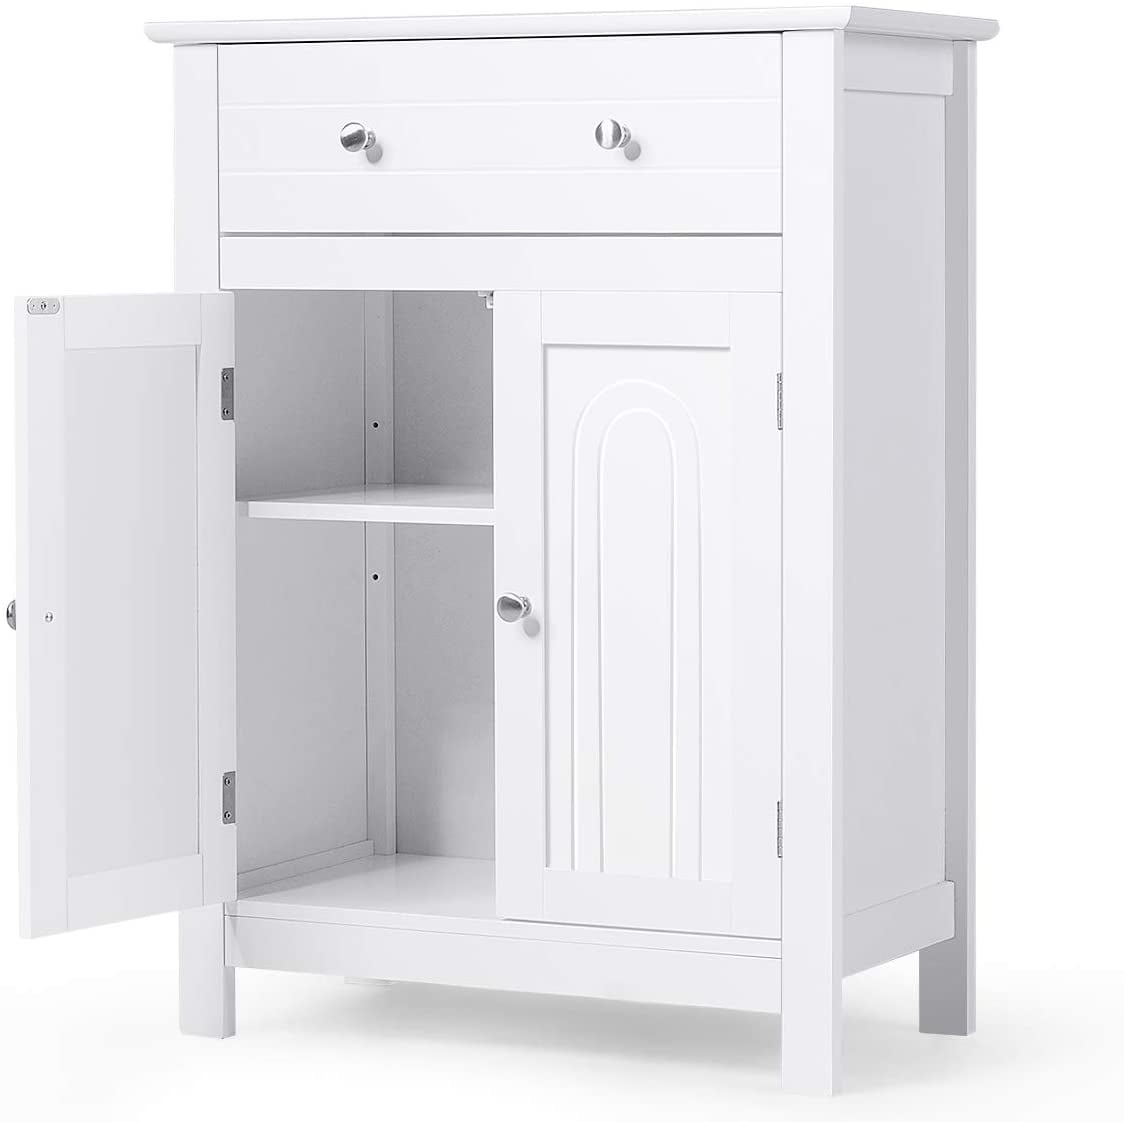 Kanstar 32 Bathroom Storage Cabinet, Bathroom Storage Cabinets White Gloss